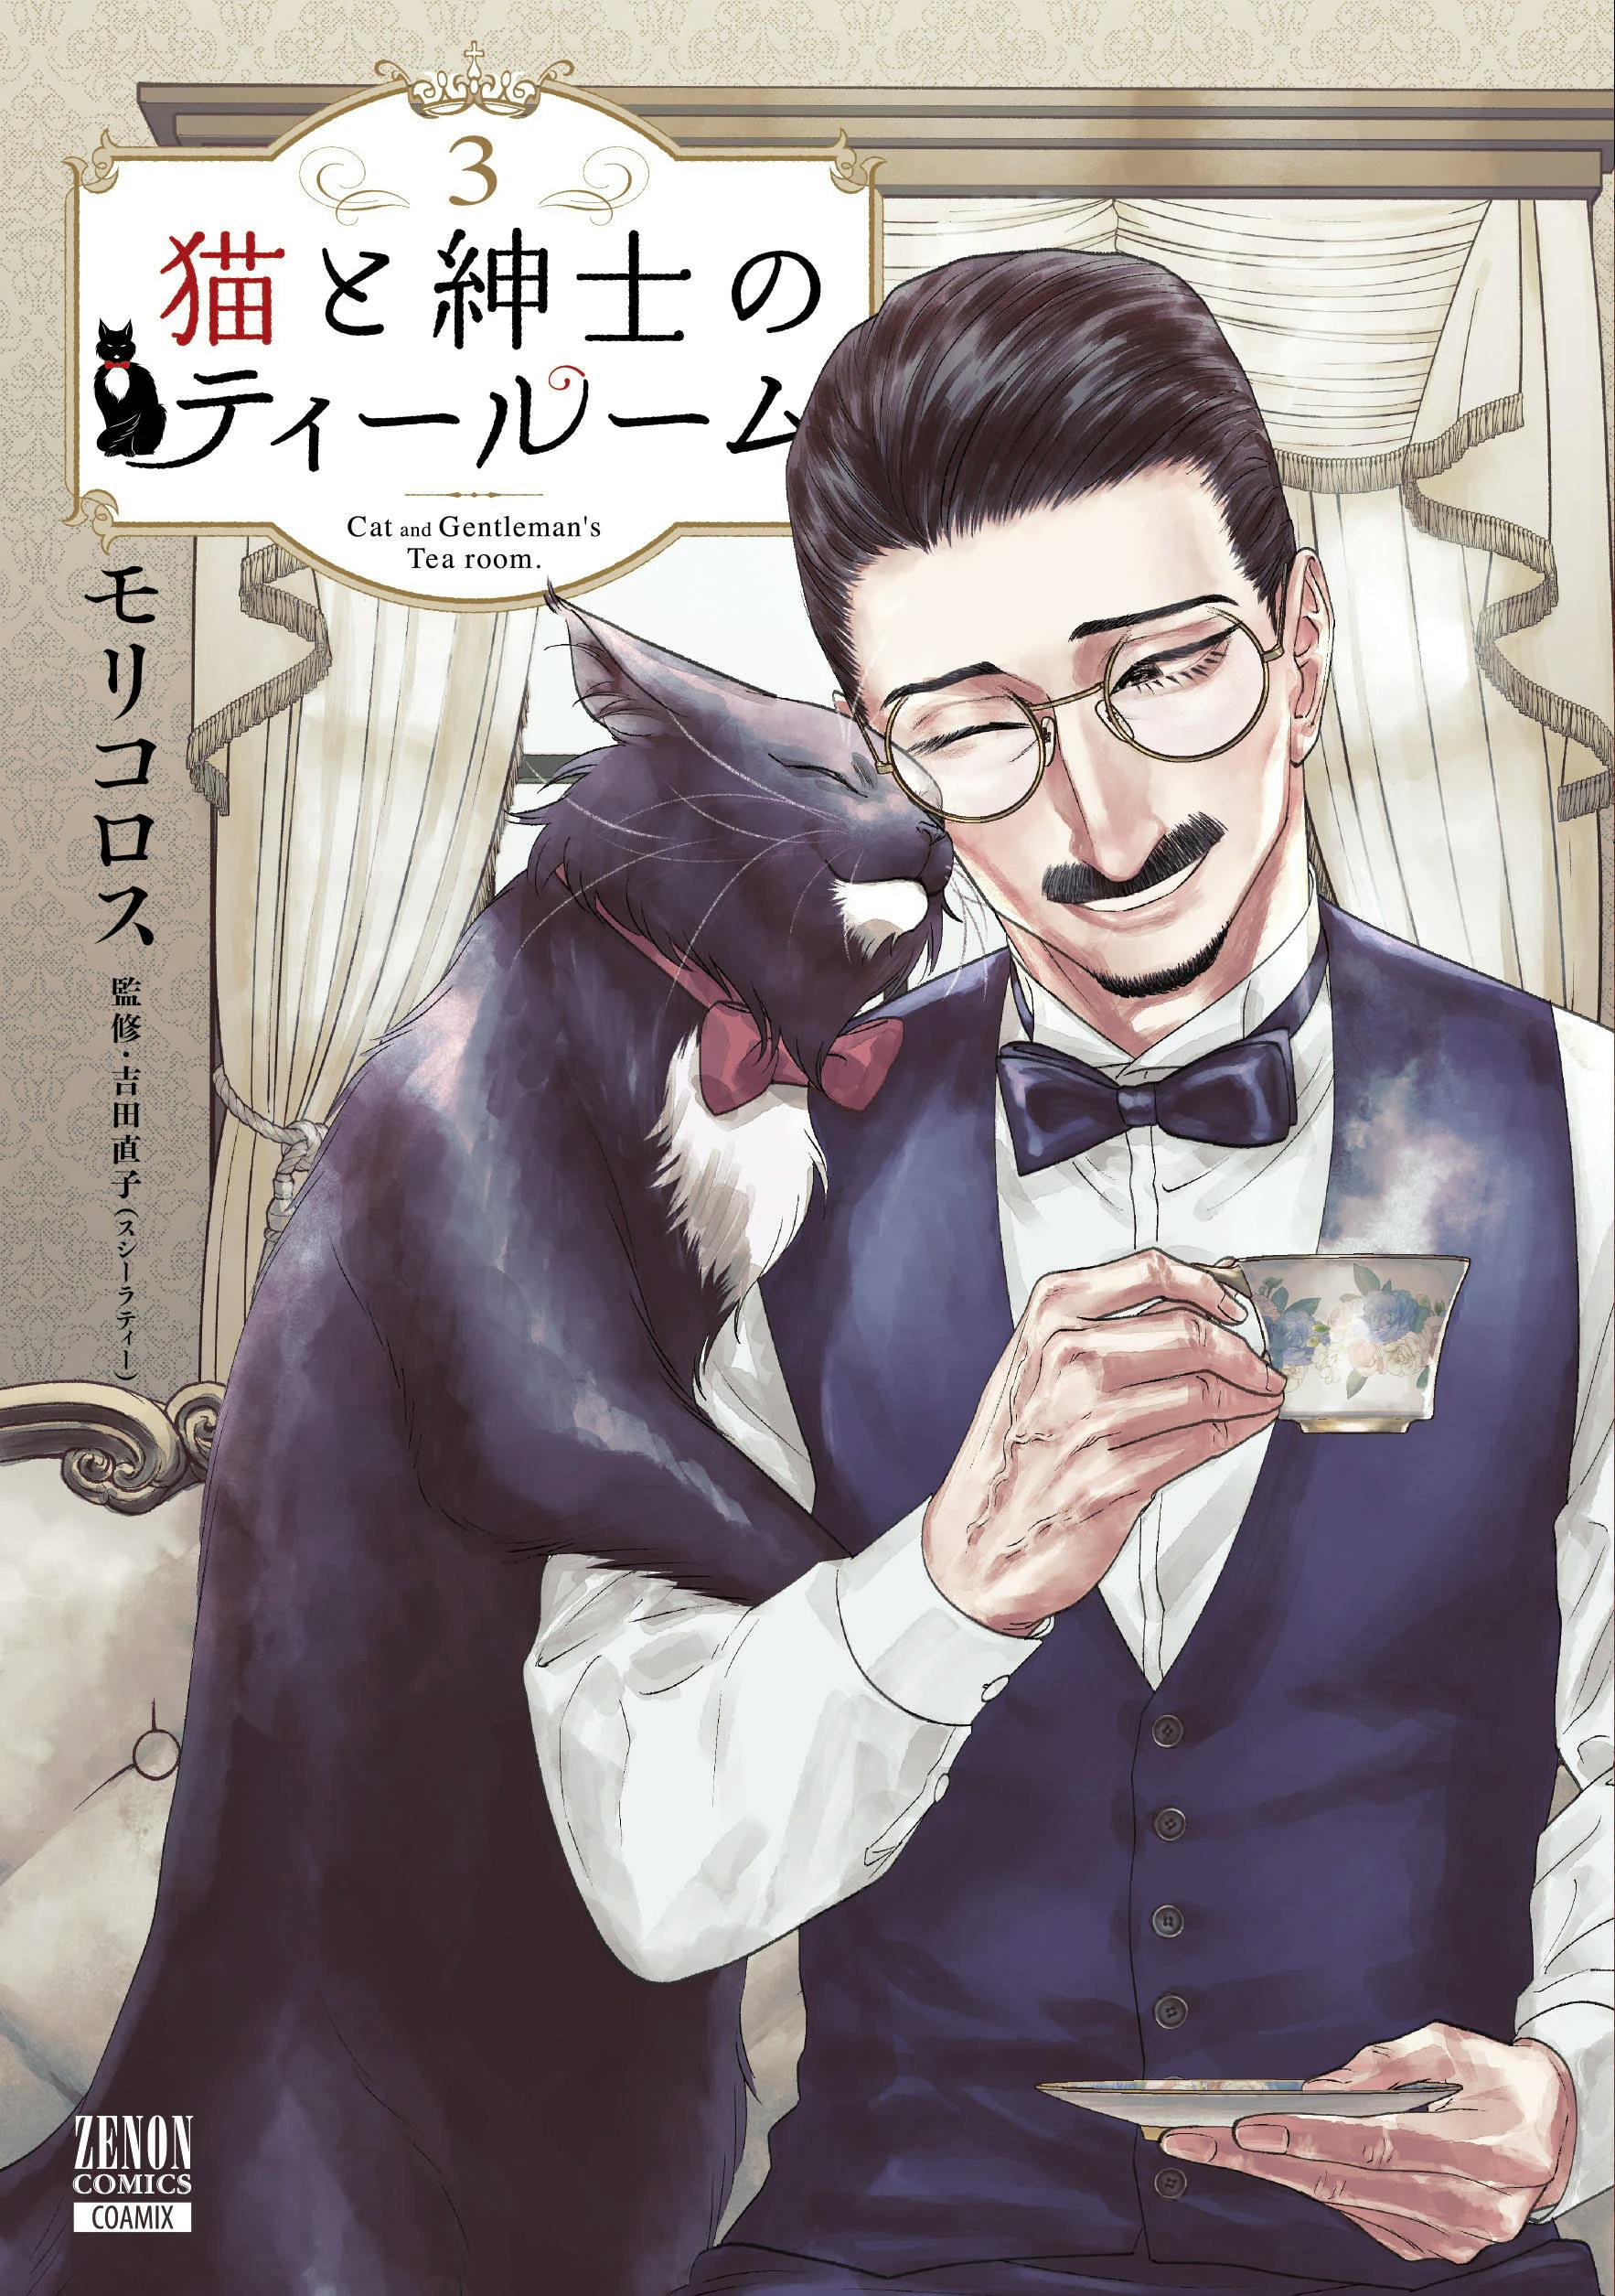 “健全な紅茶の漫画です” 特典告知のはずが、いかがわしい雰囲気に『猫と紳士のティールーム』第3巻2月20日発売